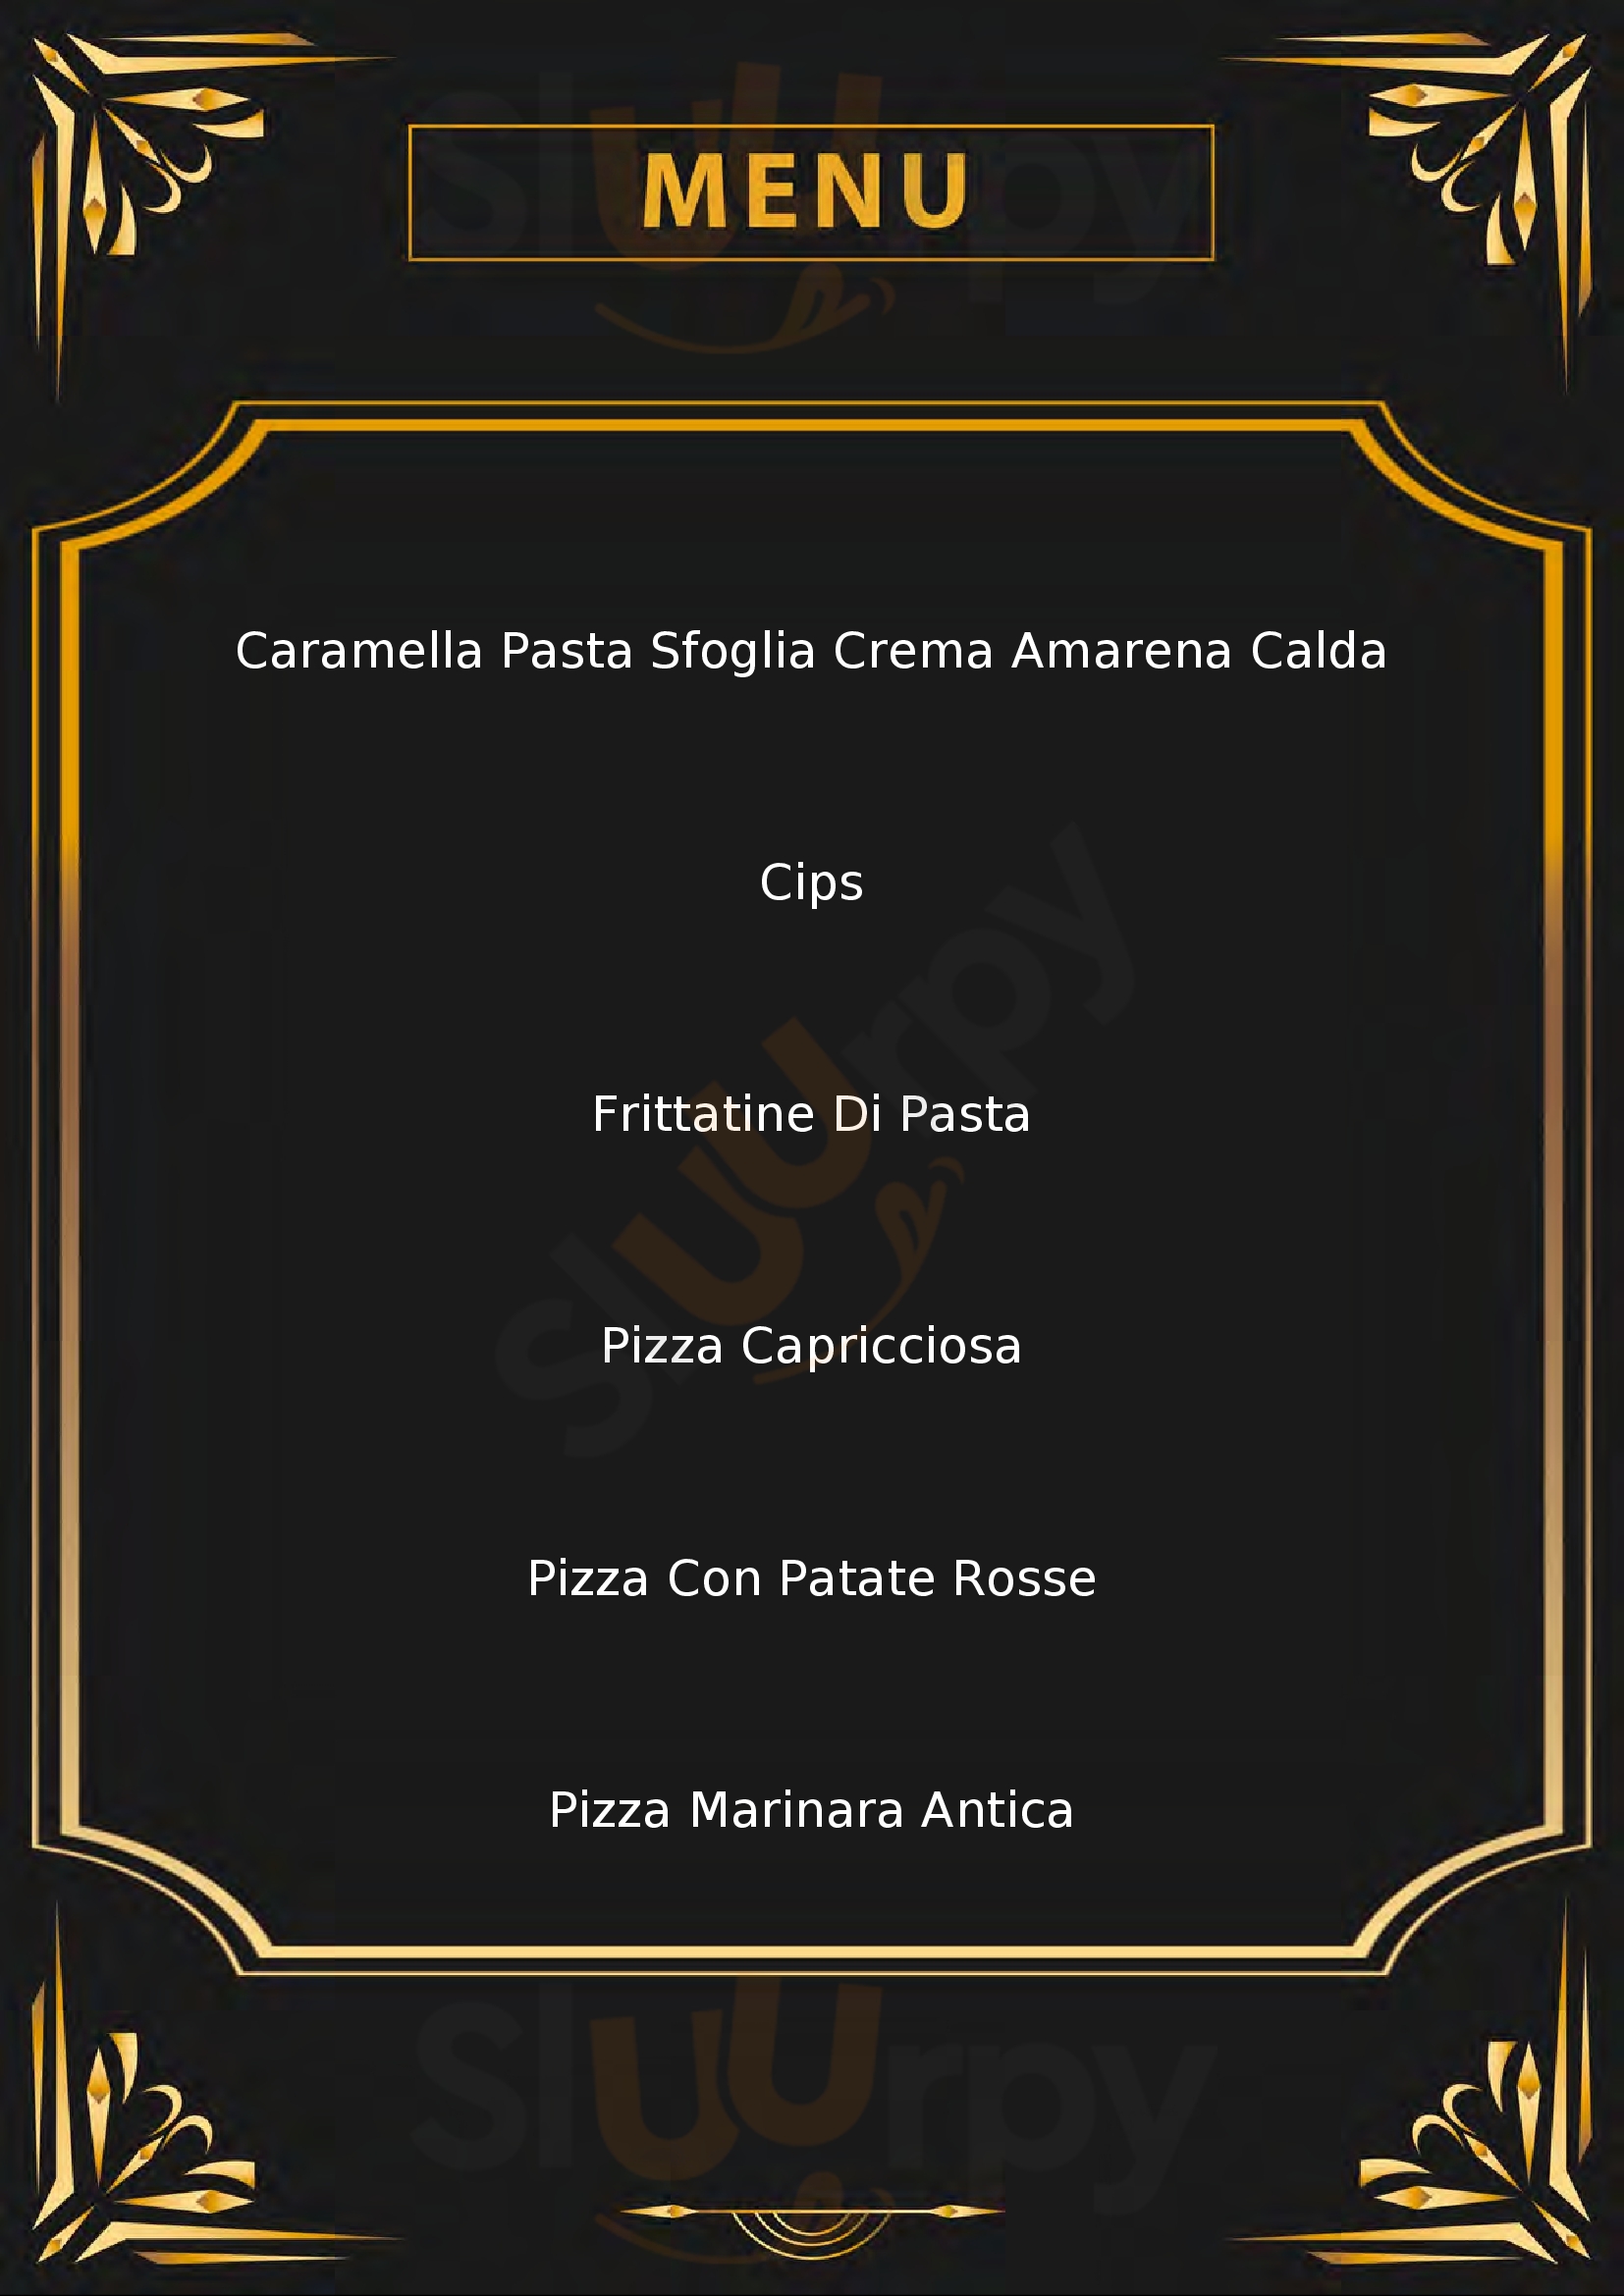 MaMa Pizza & Fritti Ottaviano menù 1 pagina